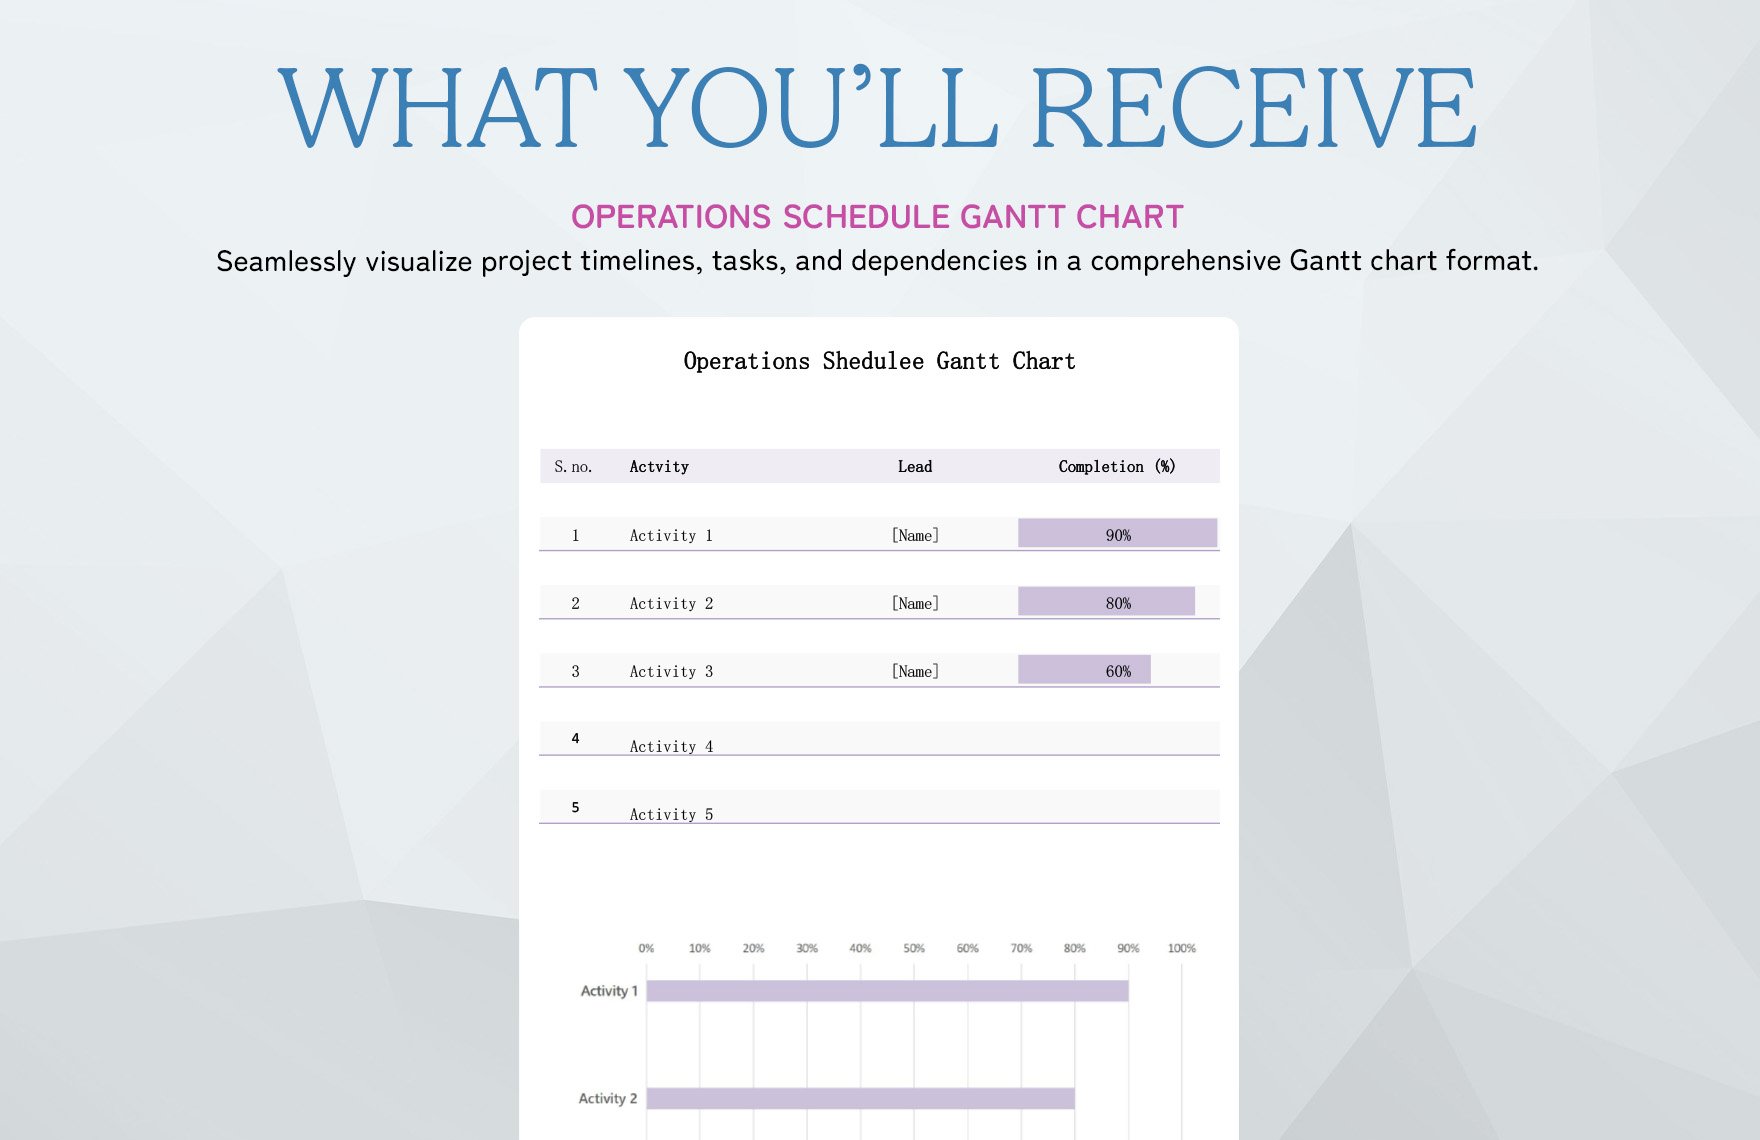 Operations Schedule Gantt Chart Template